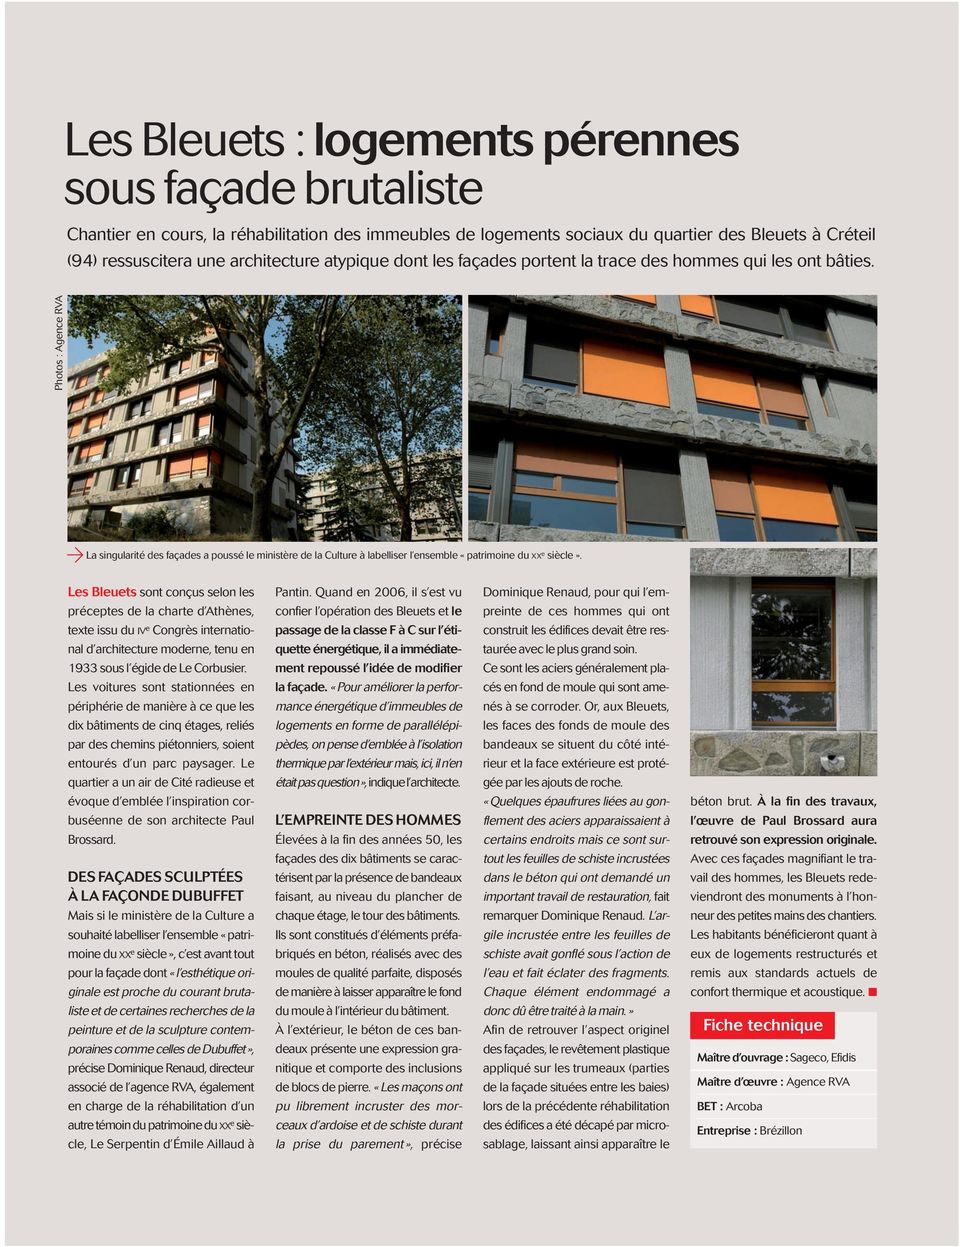 Photos : Agence RVA a La singularité des façades a poussé le ministère de la Culture à labelliser l ensemble «patrimoine du XXe siècle». Les Bleuets sont conçus selon les Pantin.